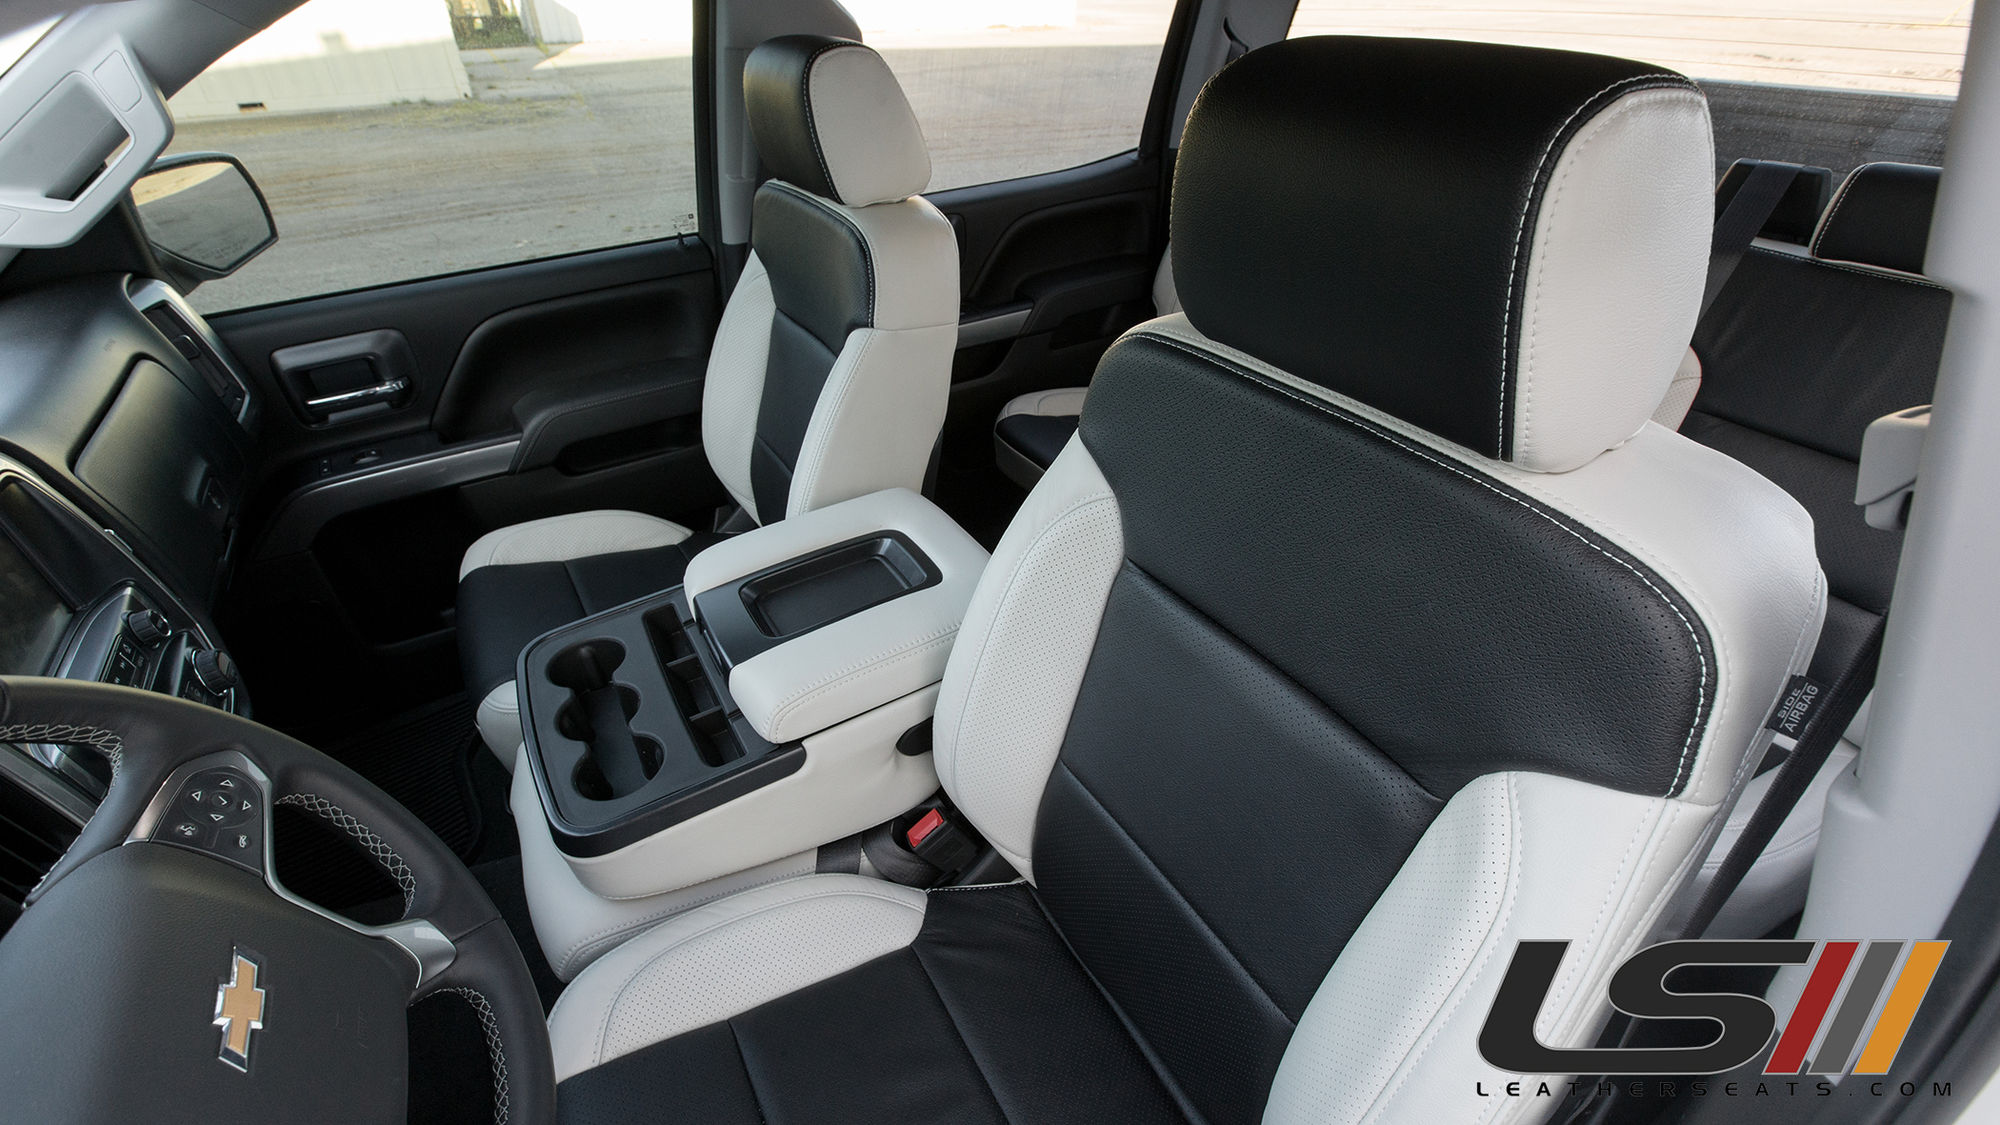 2016 Chevy Silverado Interior By Leatherseats Com